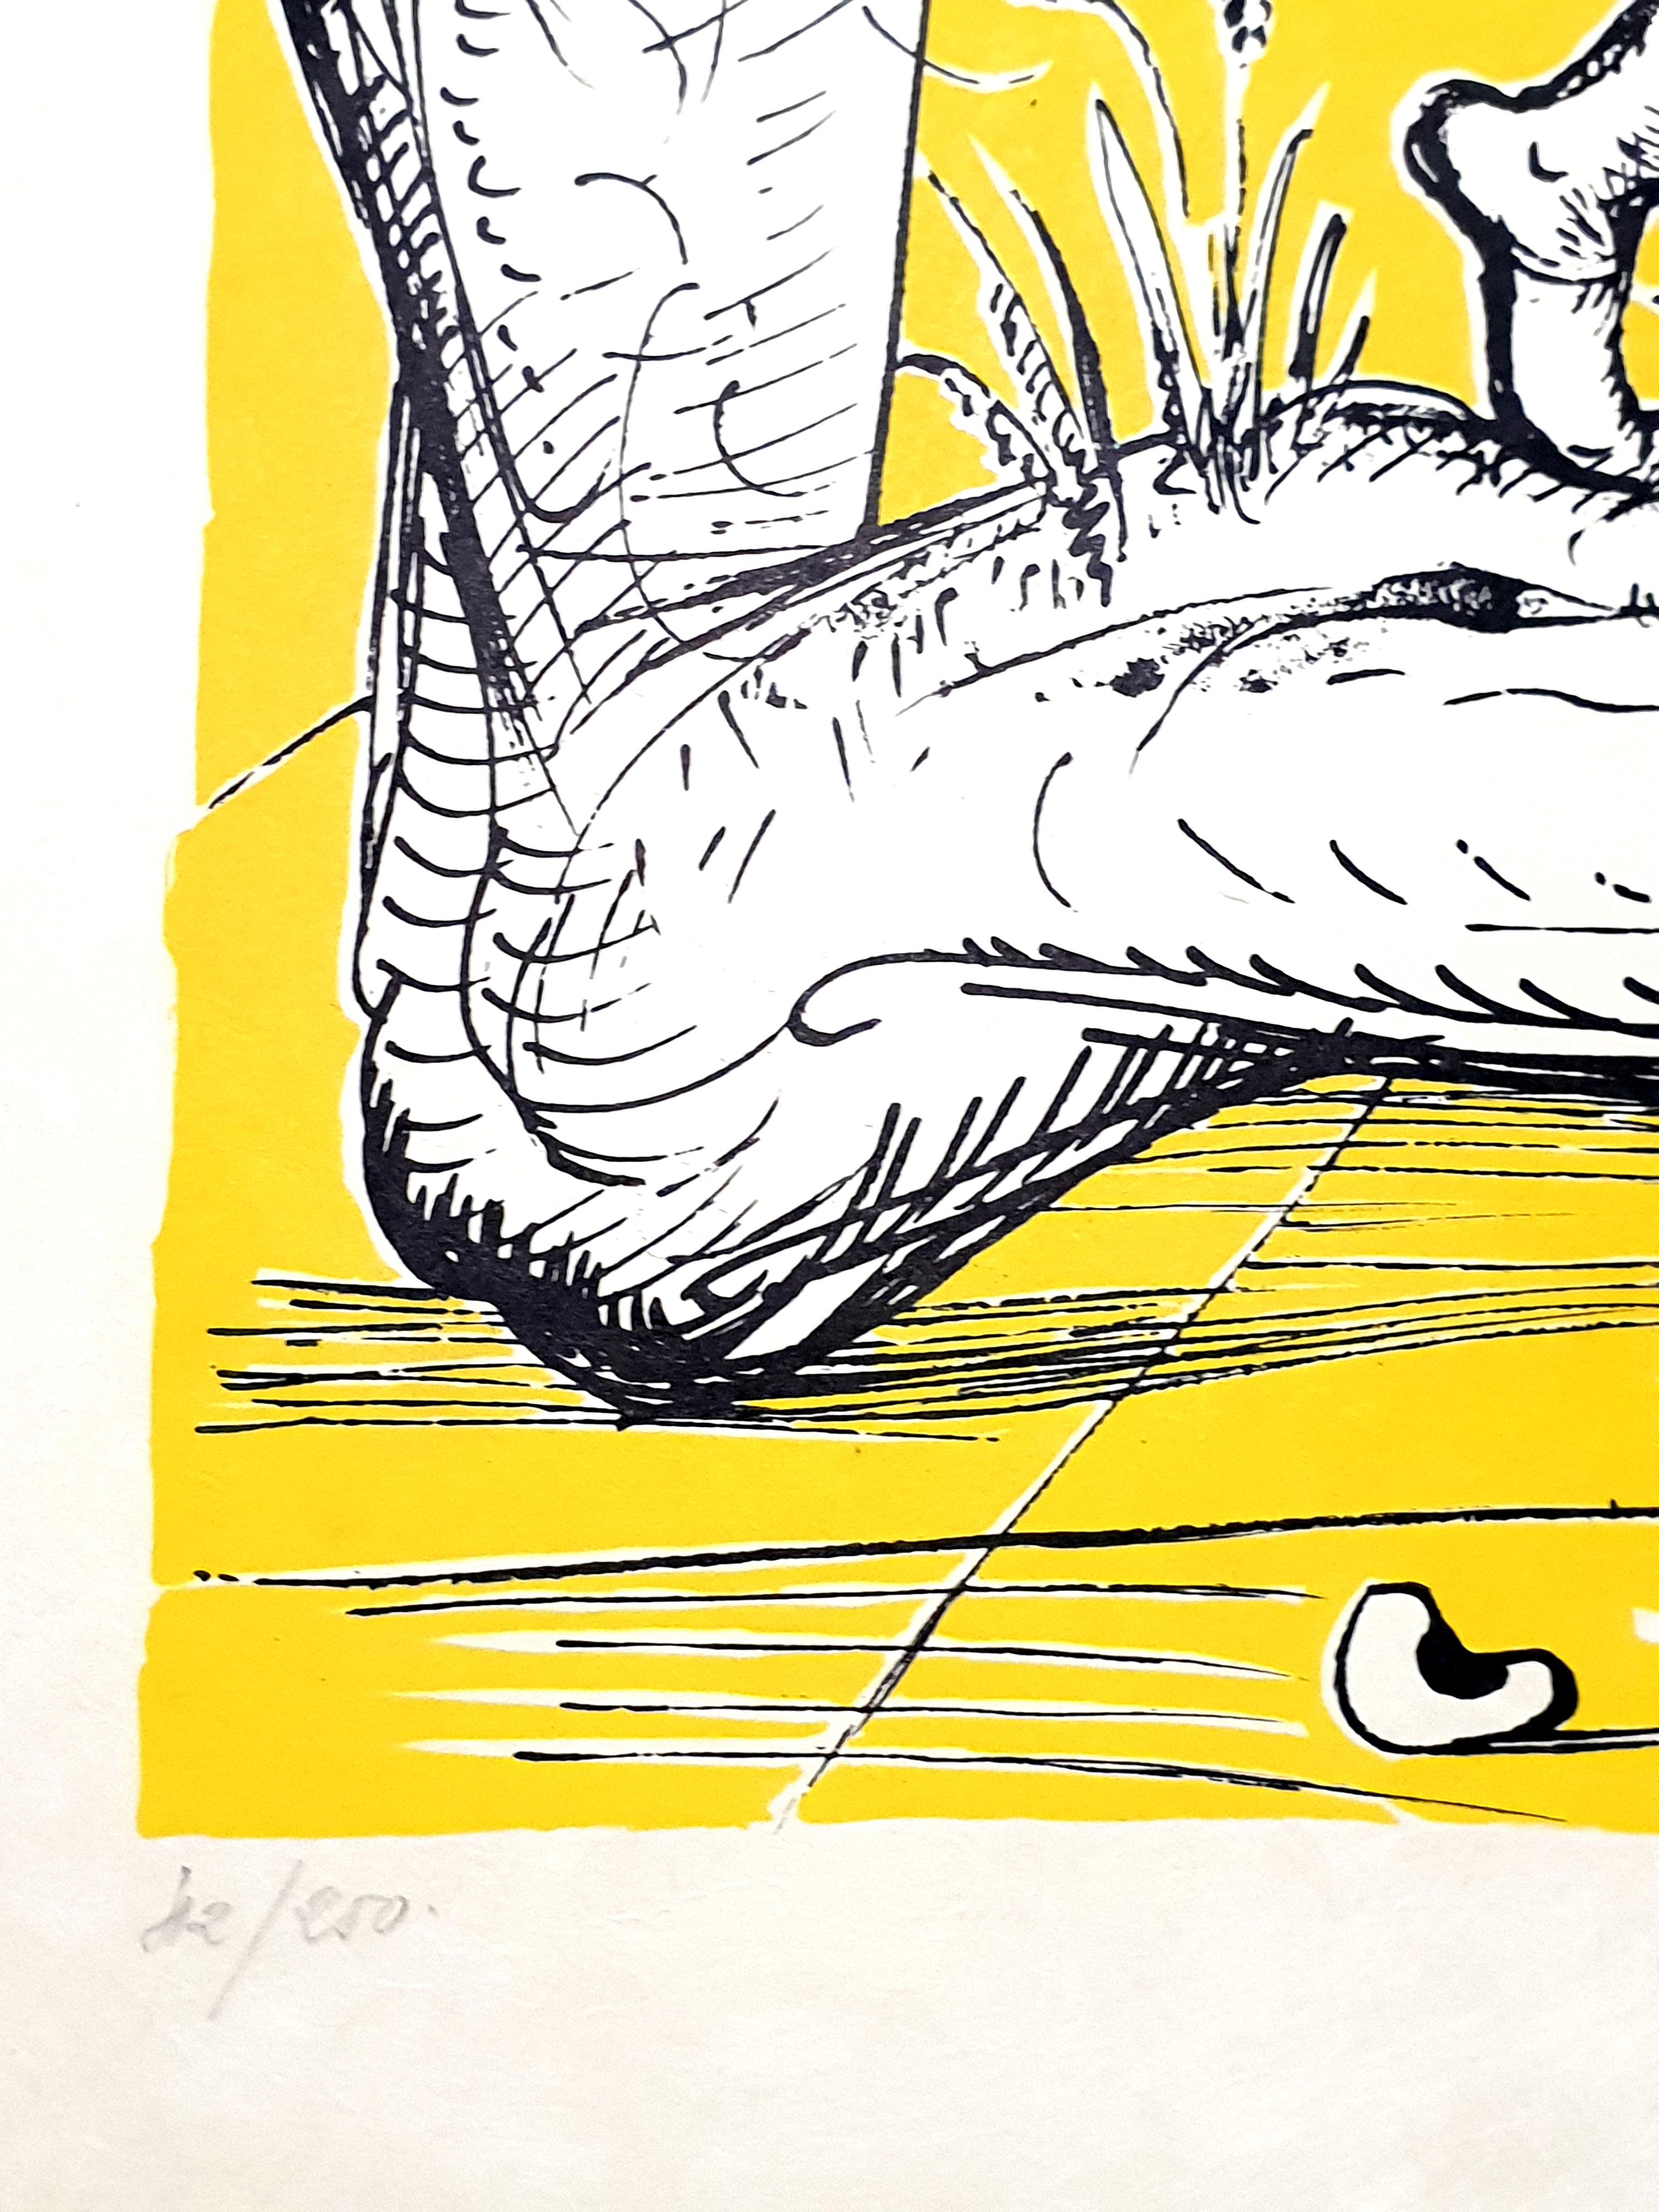 Handsignierte Lithographie von Salvador Dali
Diese Ausgabe ist auf Japanpapier
Titel: Pantagruels Träume
Mit Bleistift signiert von Salvador Dali
Abmessungen: 76 x 56 cm
Auflage: 42/250
1973
Referenzen: Field 73-7 (S. 173-174) / Michler & Lopsinger